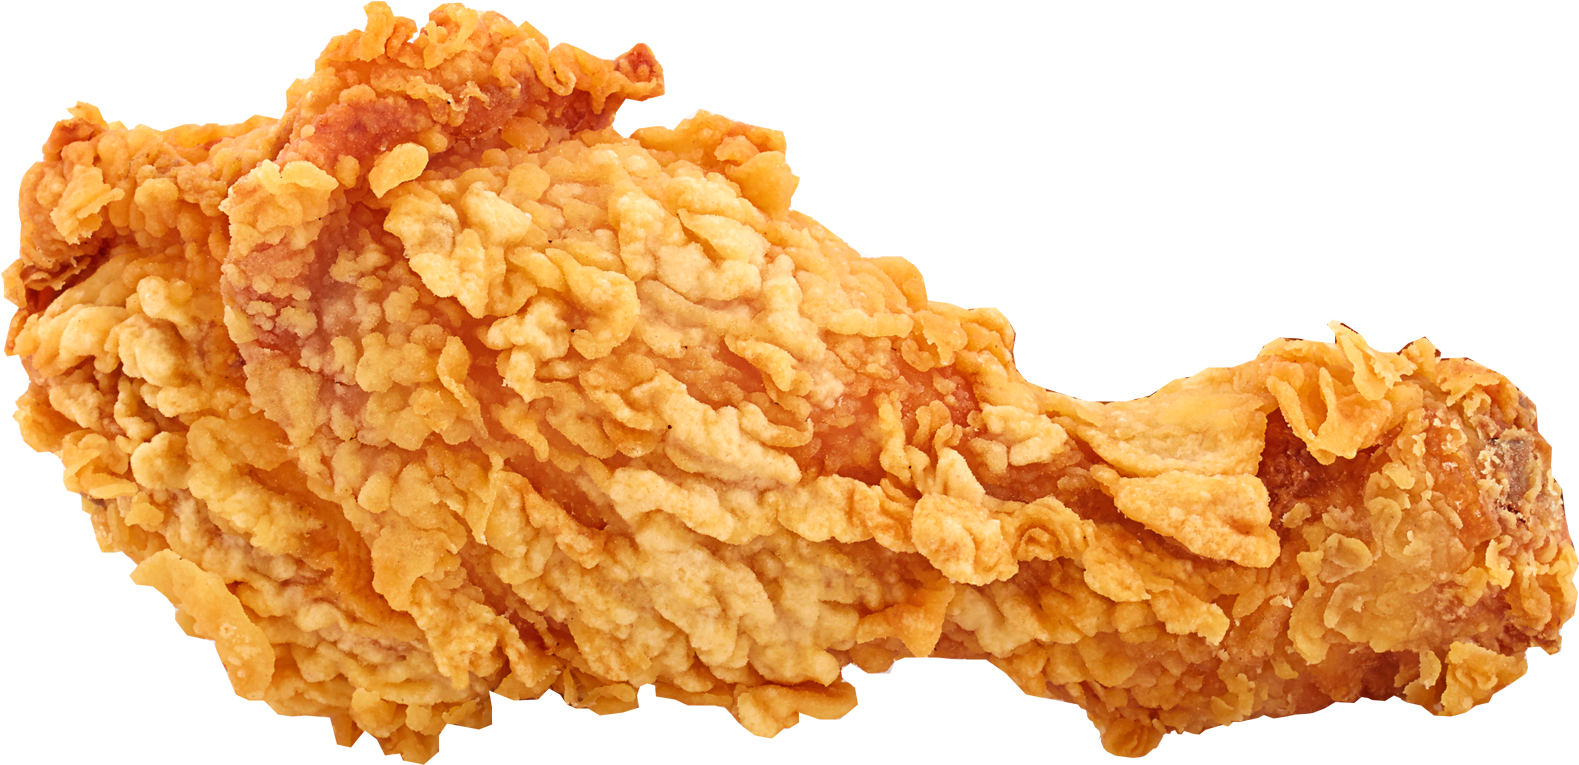 Immagine Trasparente del pollo croccante fritto